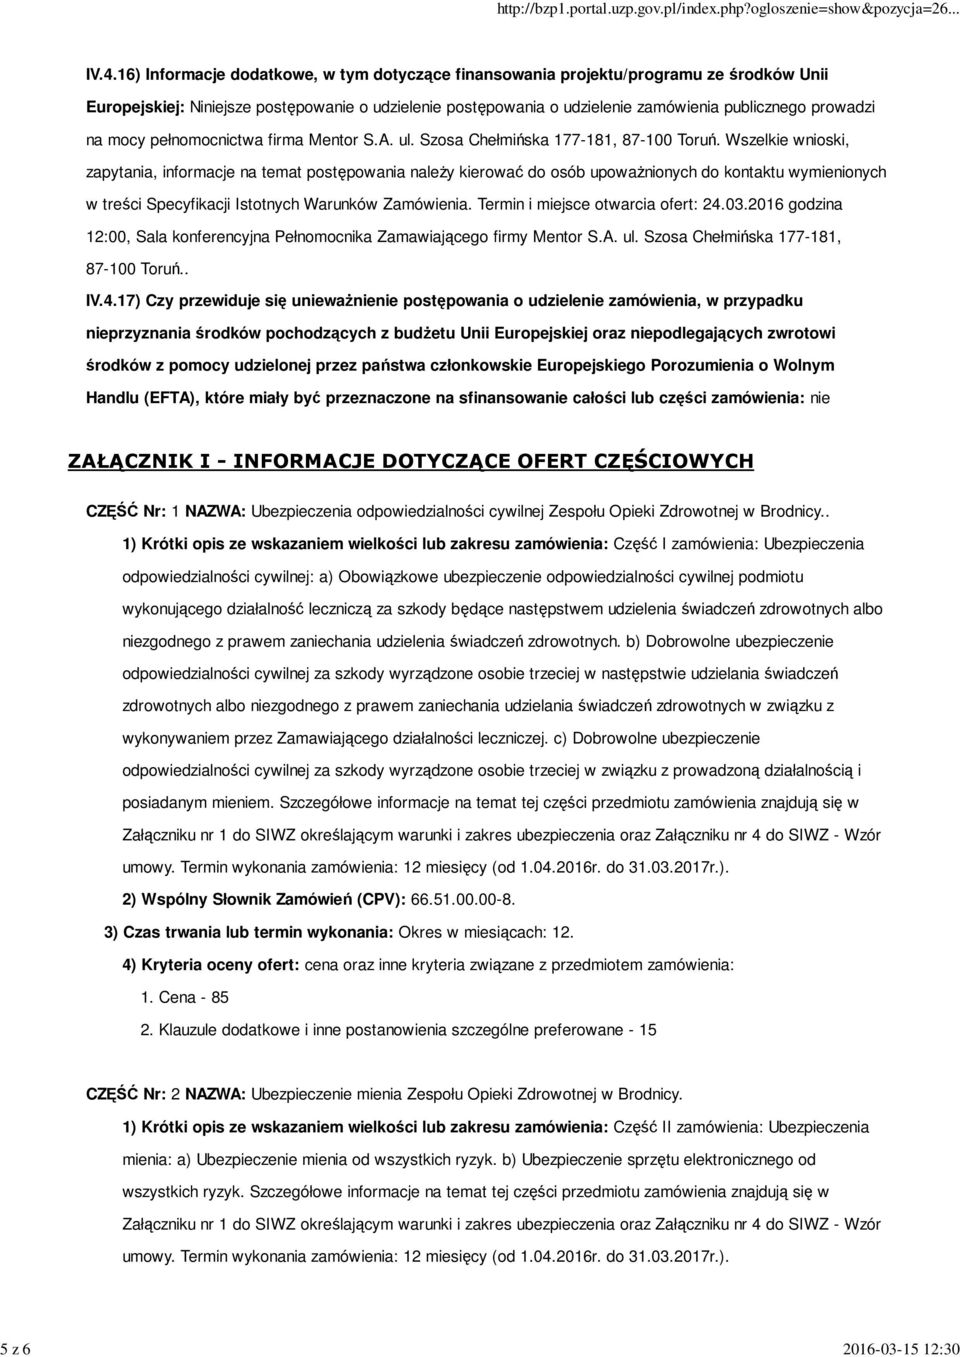 mocy pełnomocnictwa firma Mentor S.A. ul. Szosa Chełmińska 177-181, 87-100 Toruń.